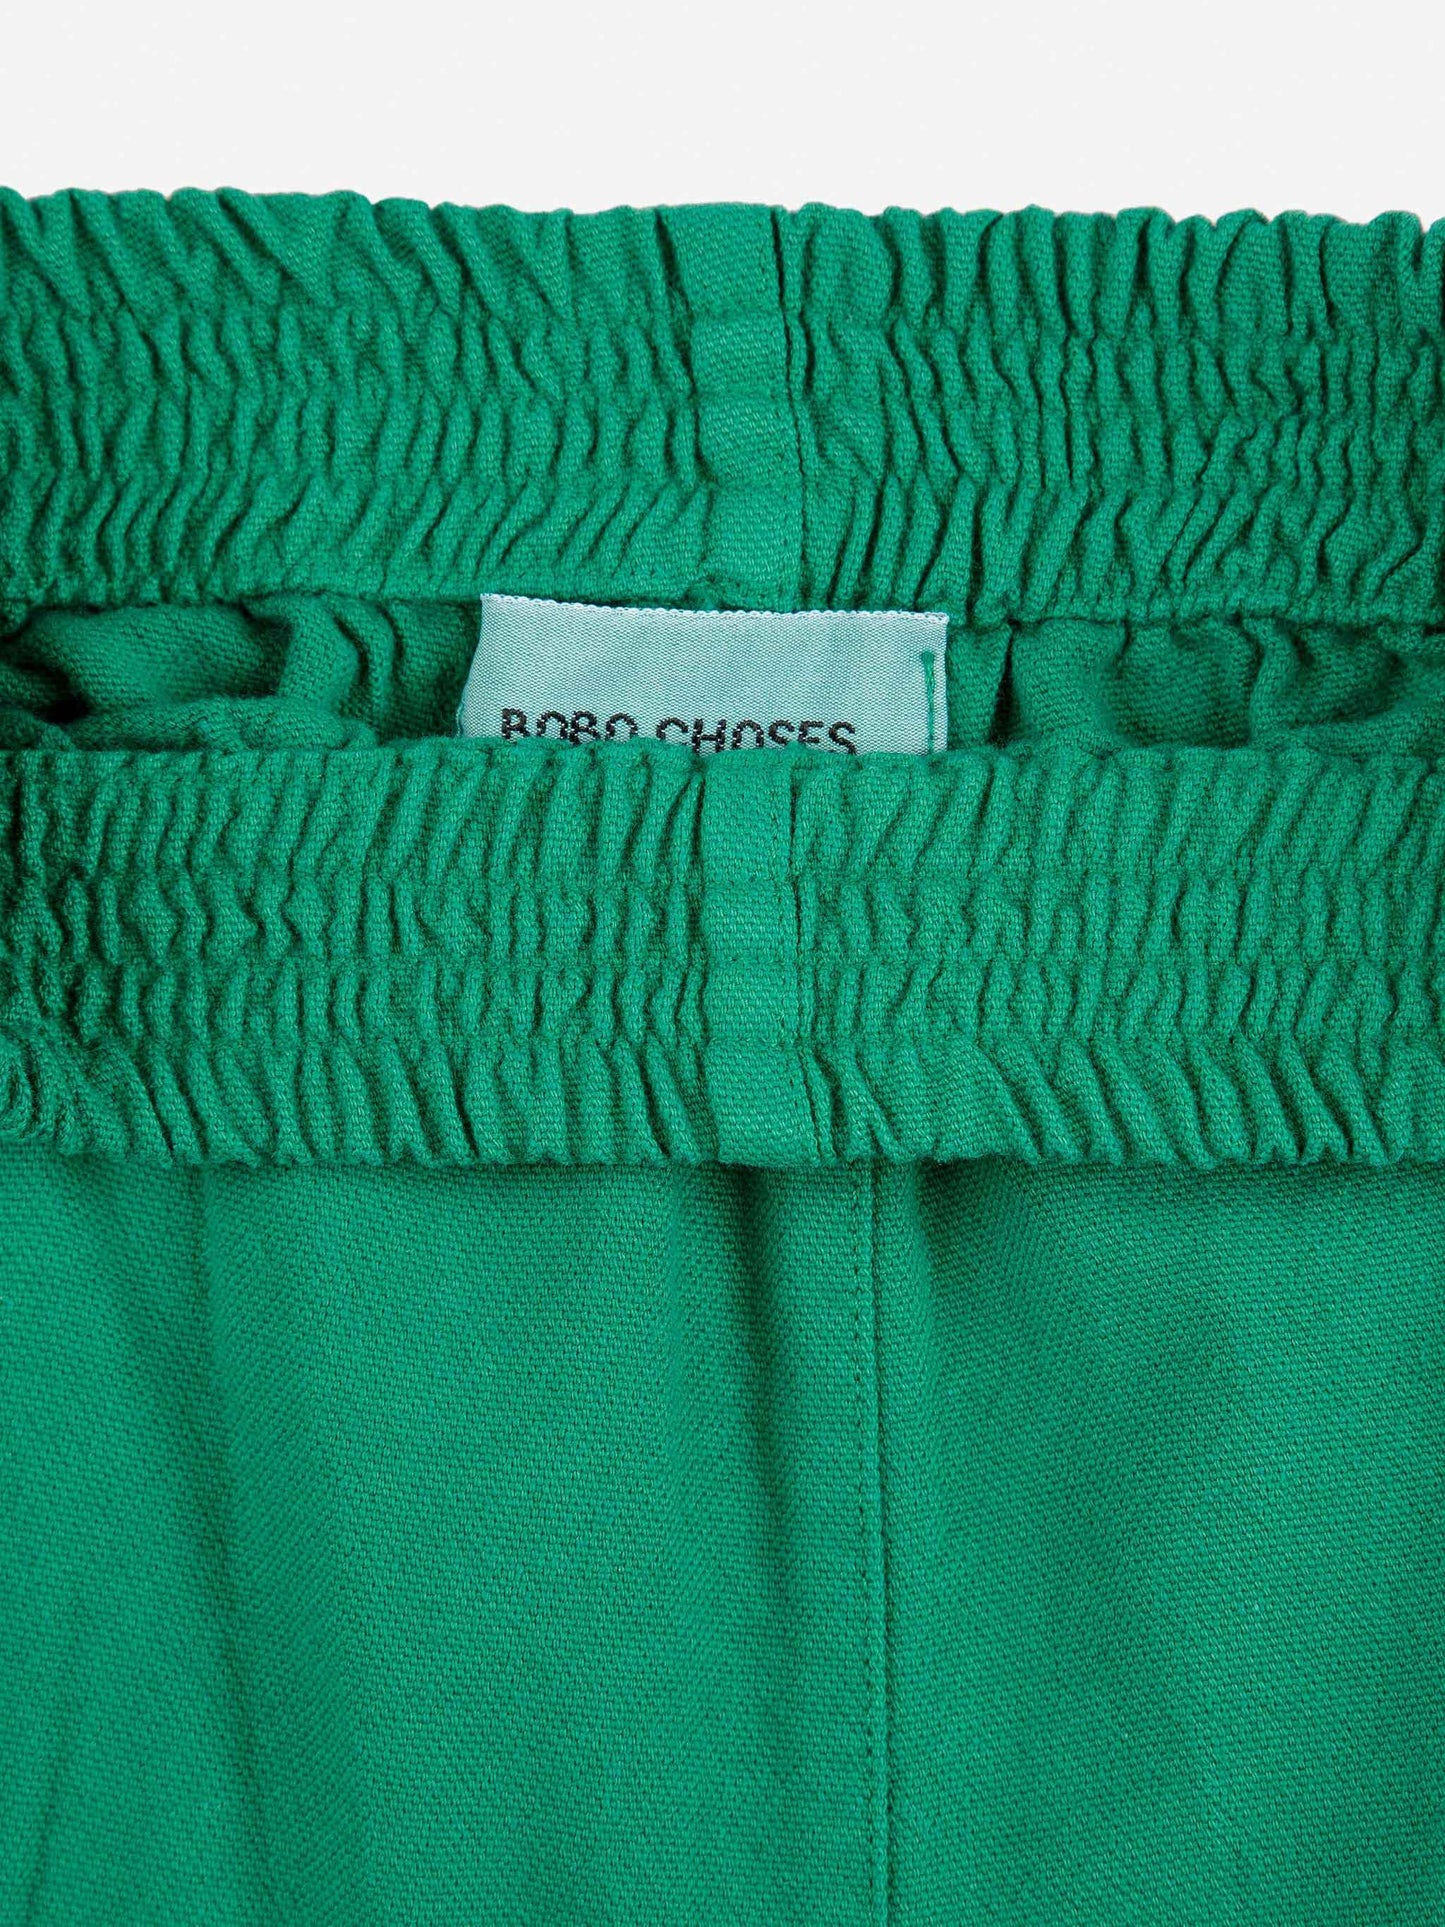 Pantalons Poma verds